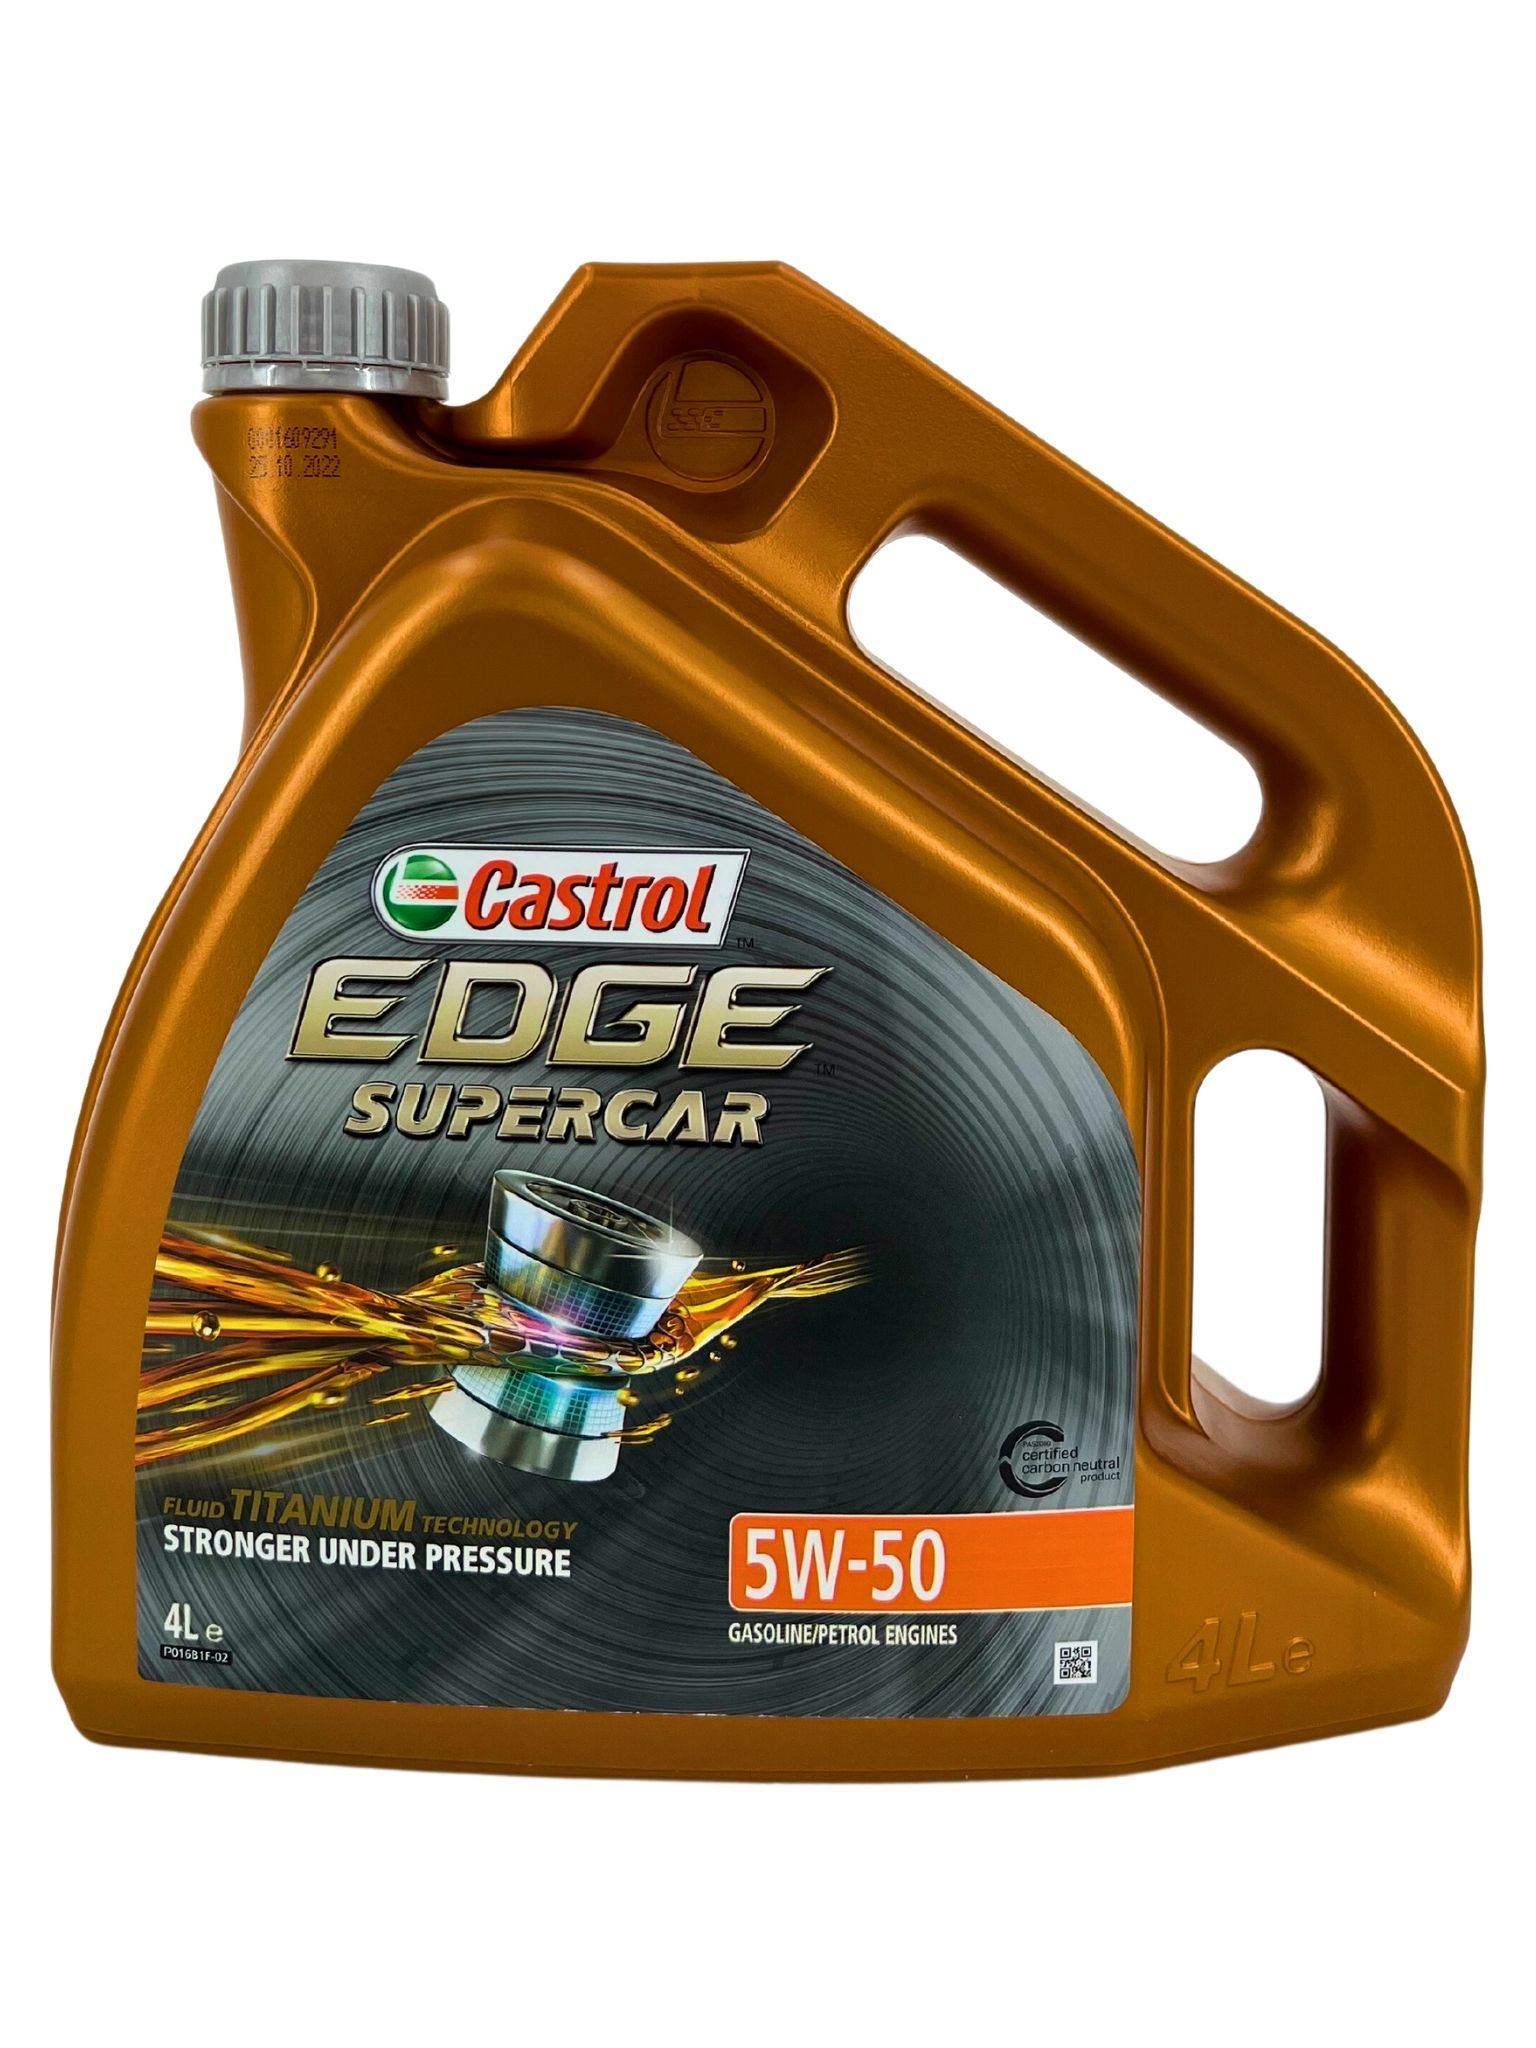 Castrol Edge Supercar Fluid Titanium 5W-50 4 Liter